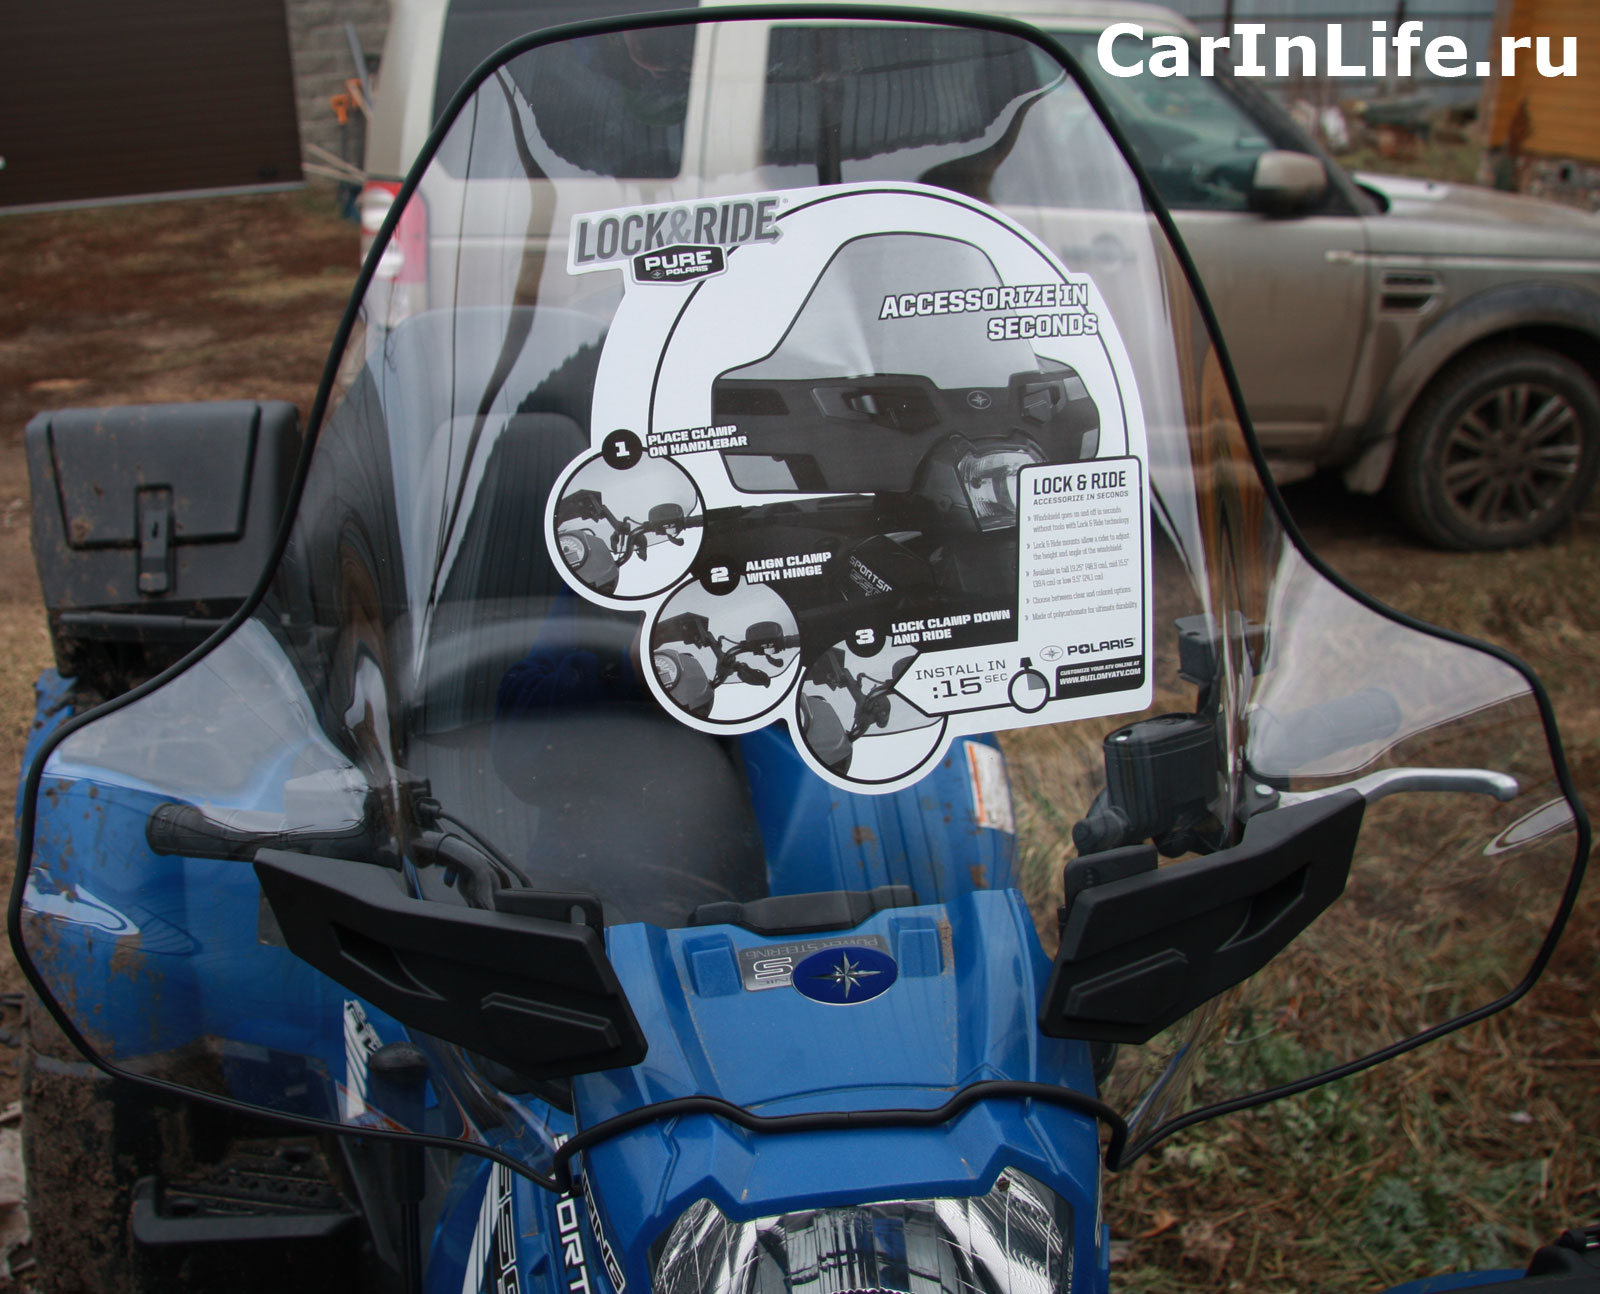 Стекло ветровое на мотоцикл, их виды, универсальные стекла, спойлеры и крепления для стекол